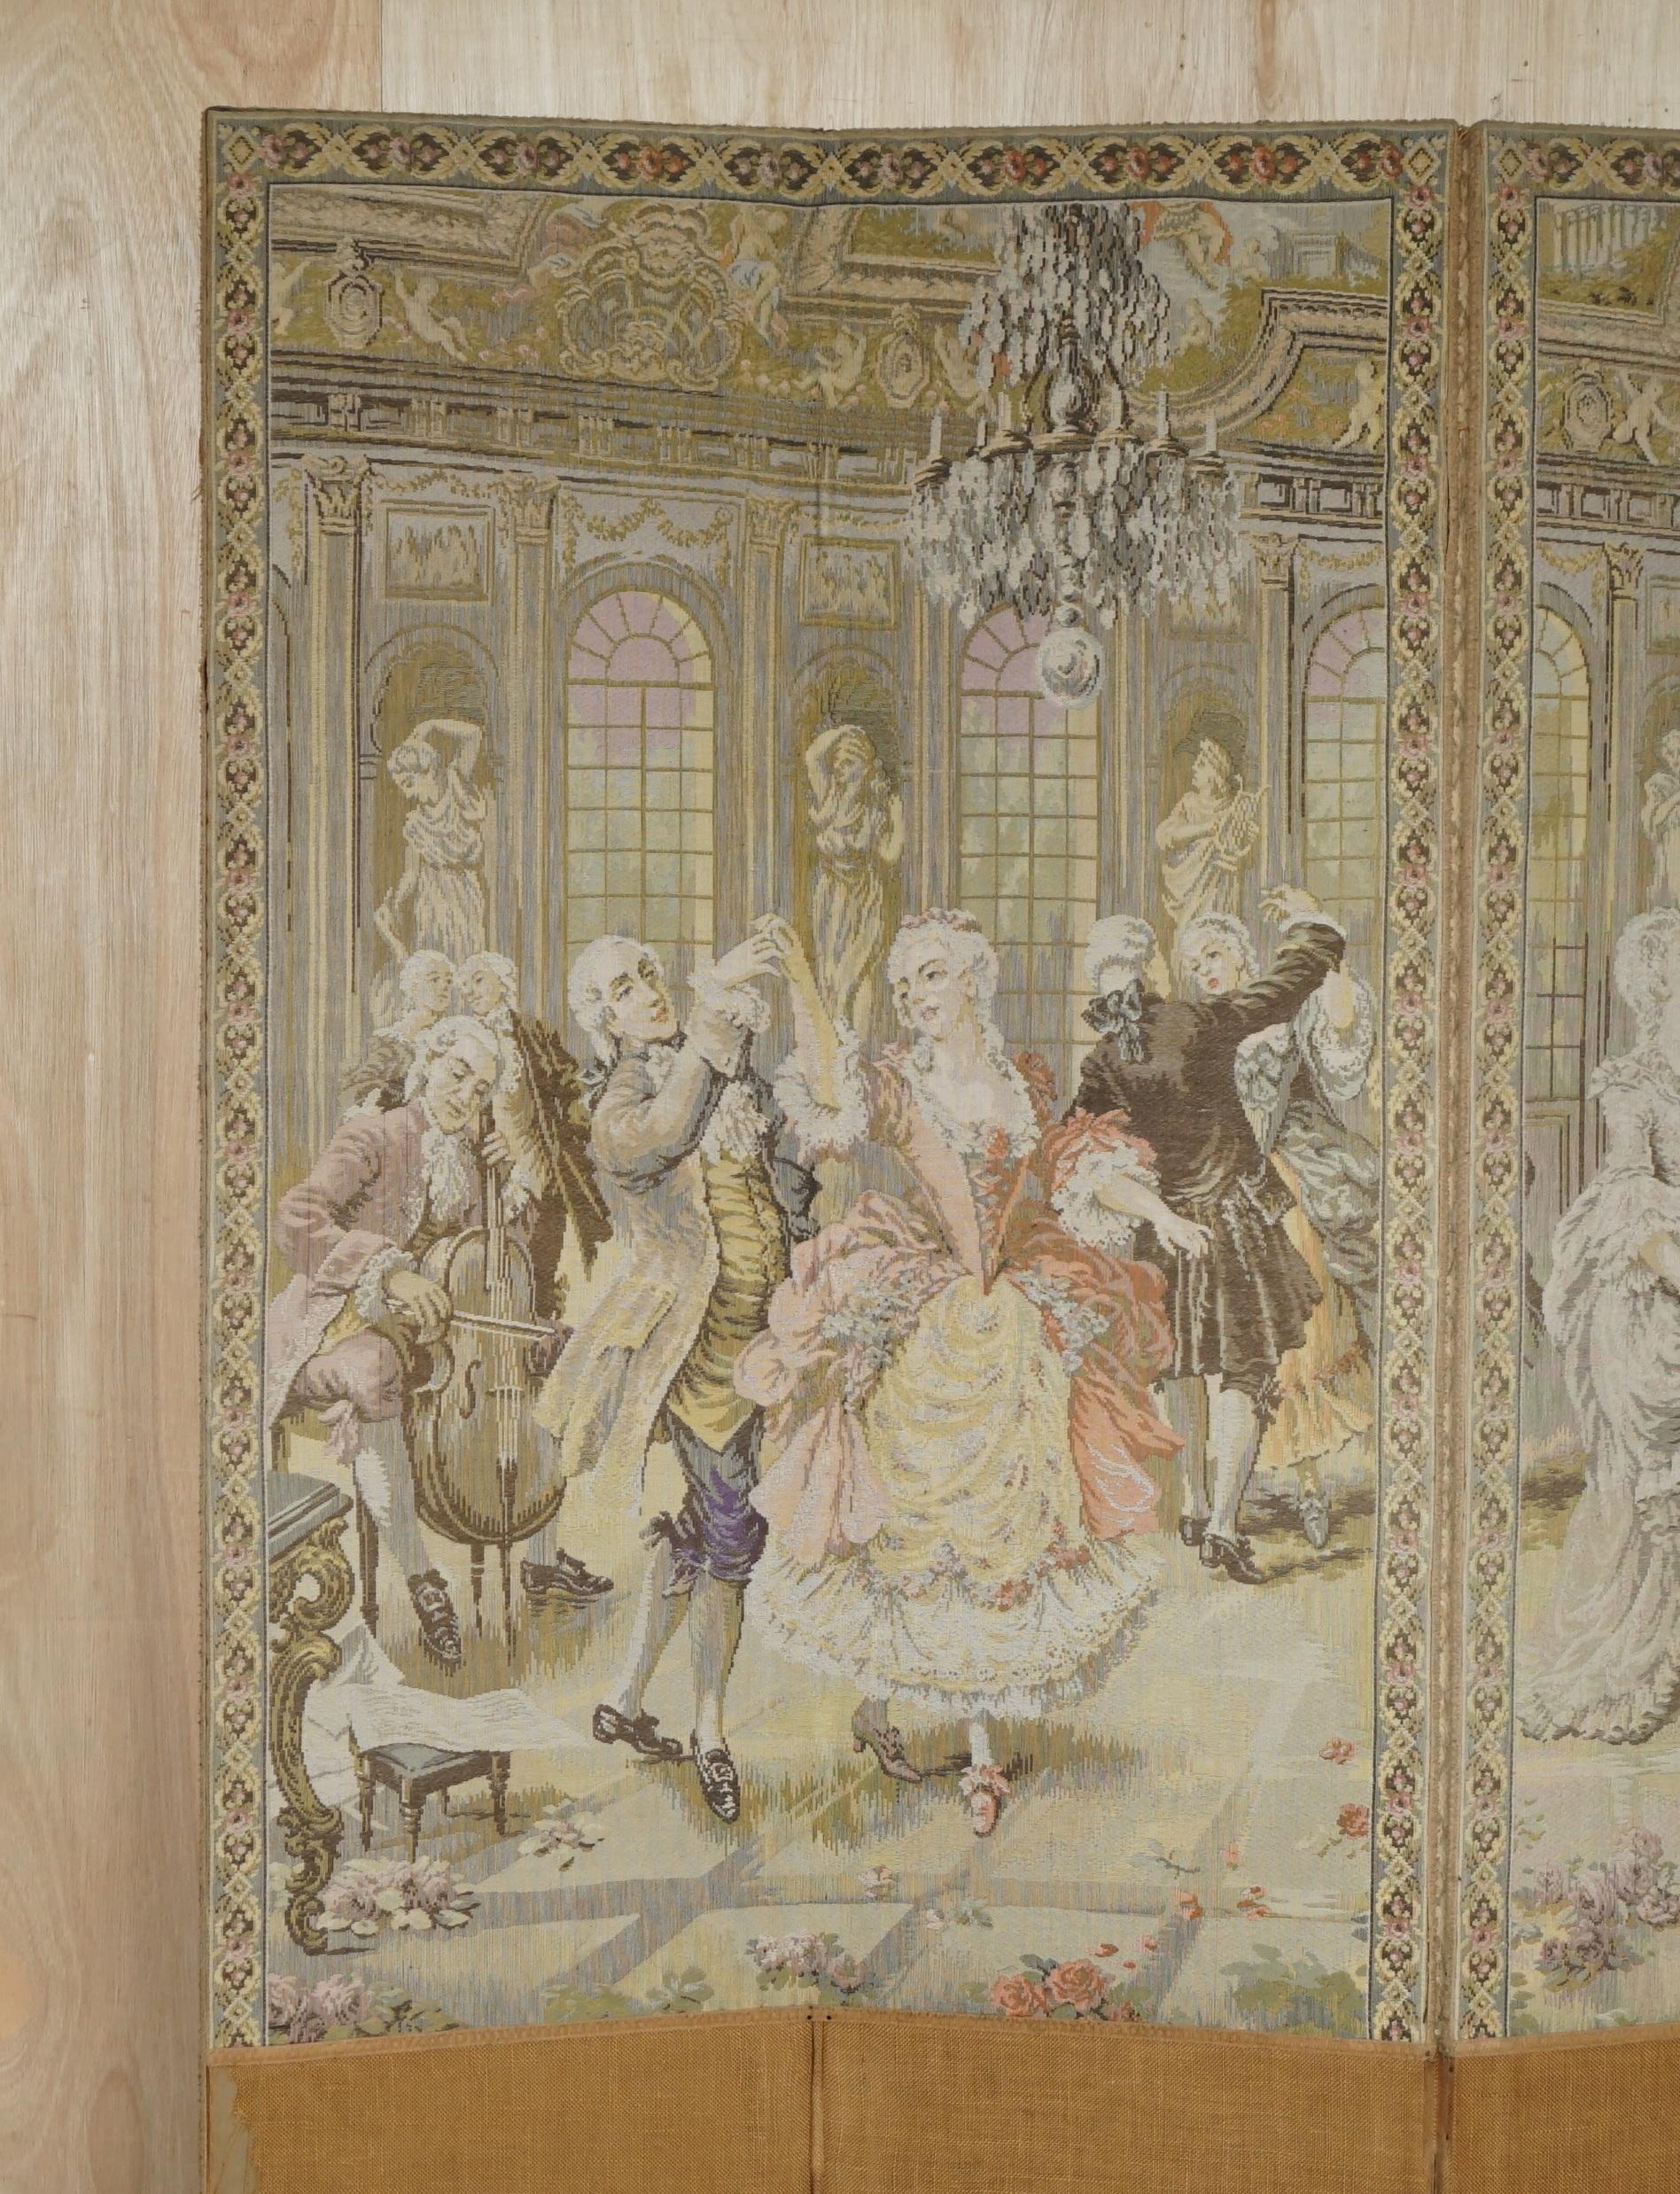 Royal House Antiques

Royal House Antiques freut sich, diese sehr dekorative handgefertigte viktorianische Wandteppich-Faltwand mit vier Tafeln zum Verkauf anbieten zu können, auf der Adlige zu sehen sind, die sich beim Essen und Tanzen zu